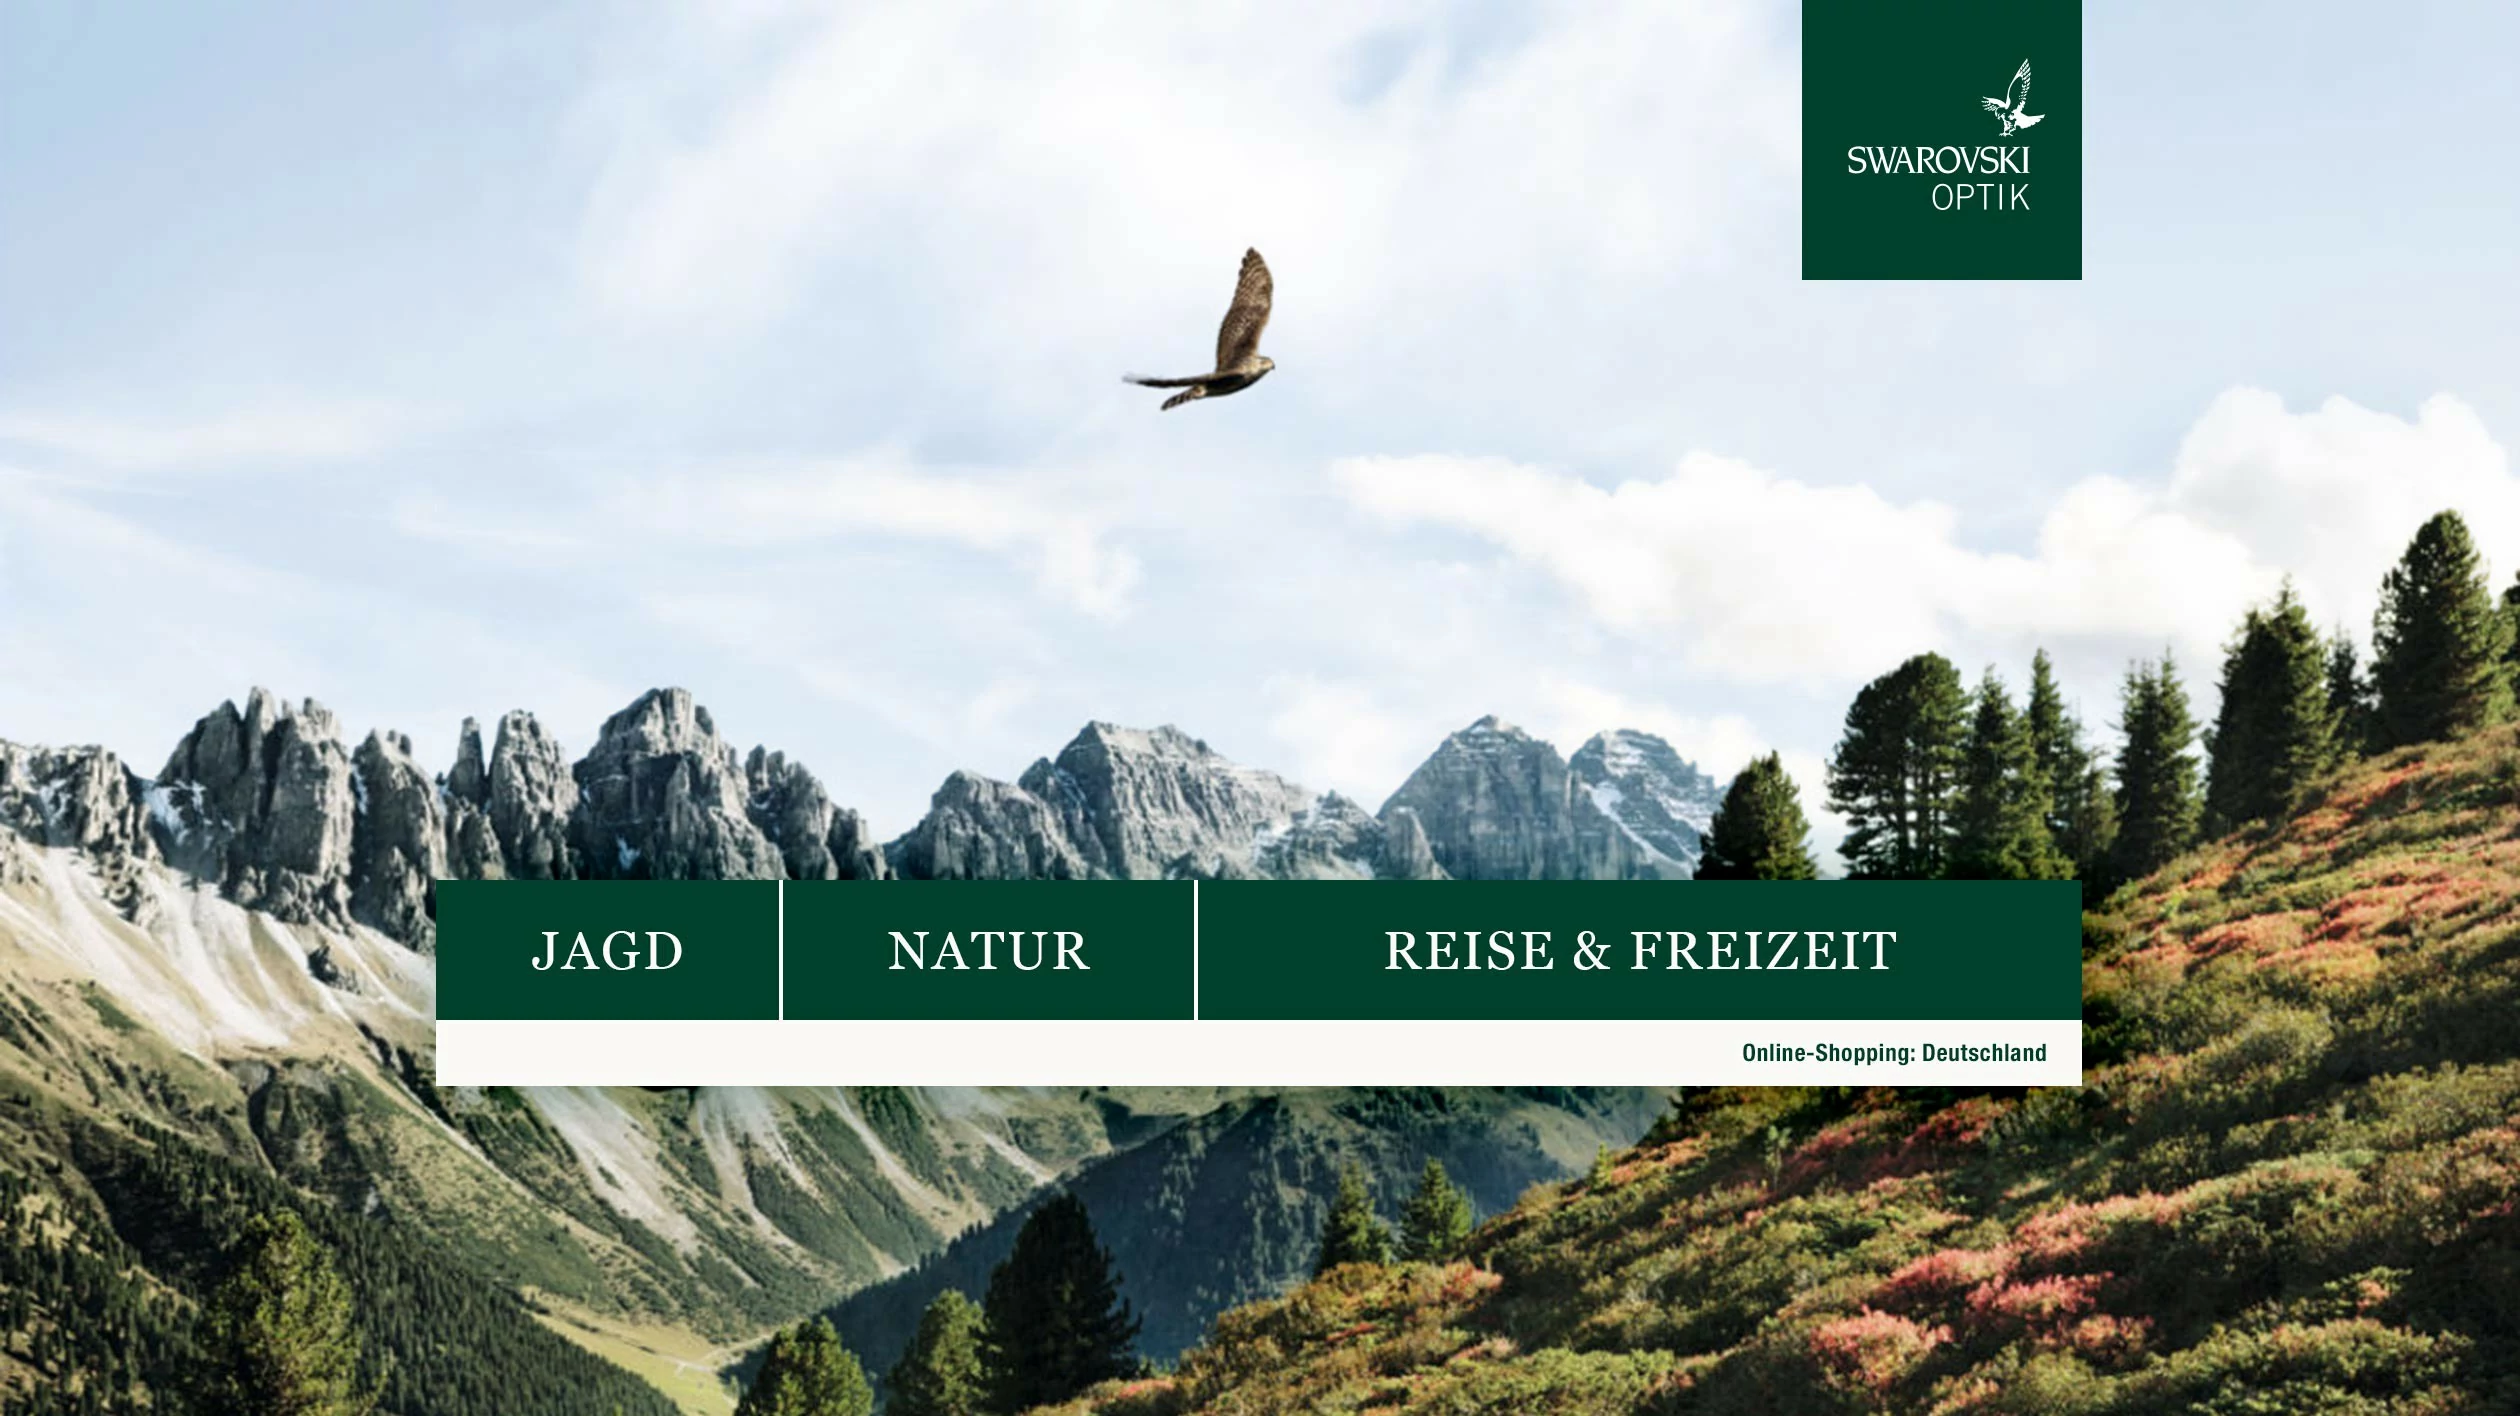 Startseite des Online Shops mit der Auswahl Jagd, Natur bzw. Reise und Freizeit. Im Hintergrund befindet sich eine Alpenlandschaft mit einem fliegenden Raubvogel.